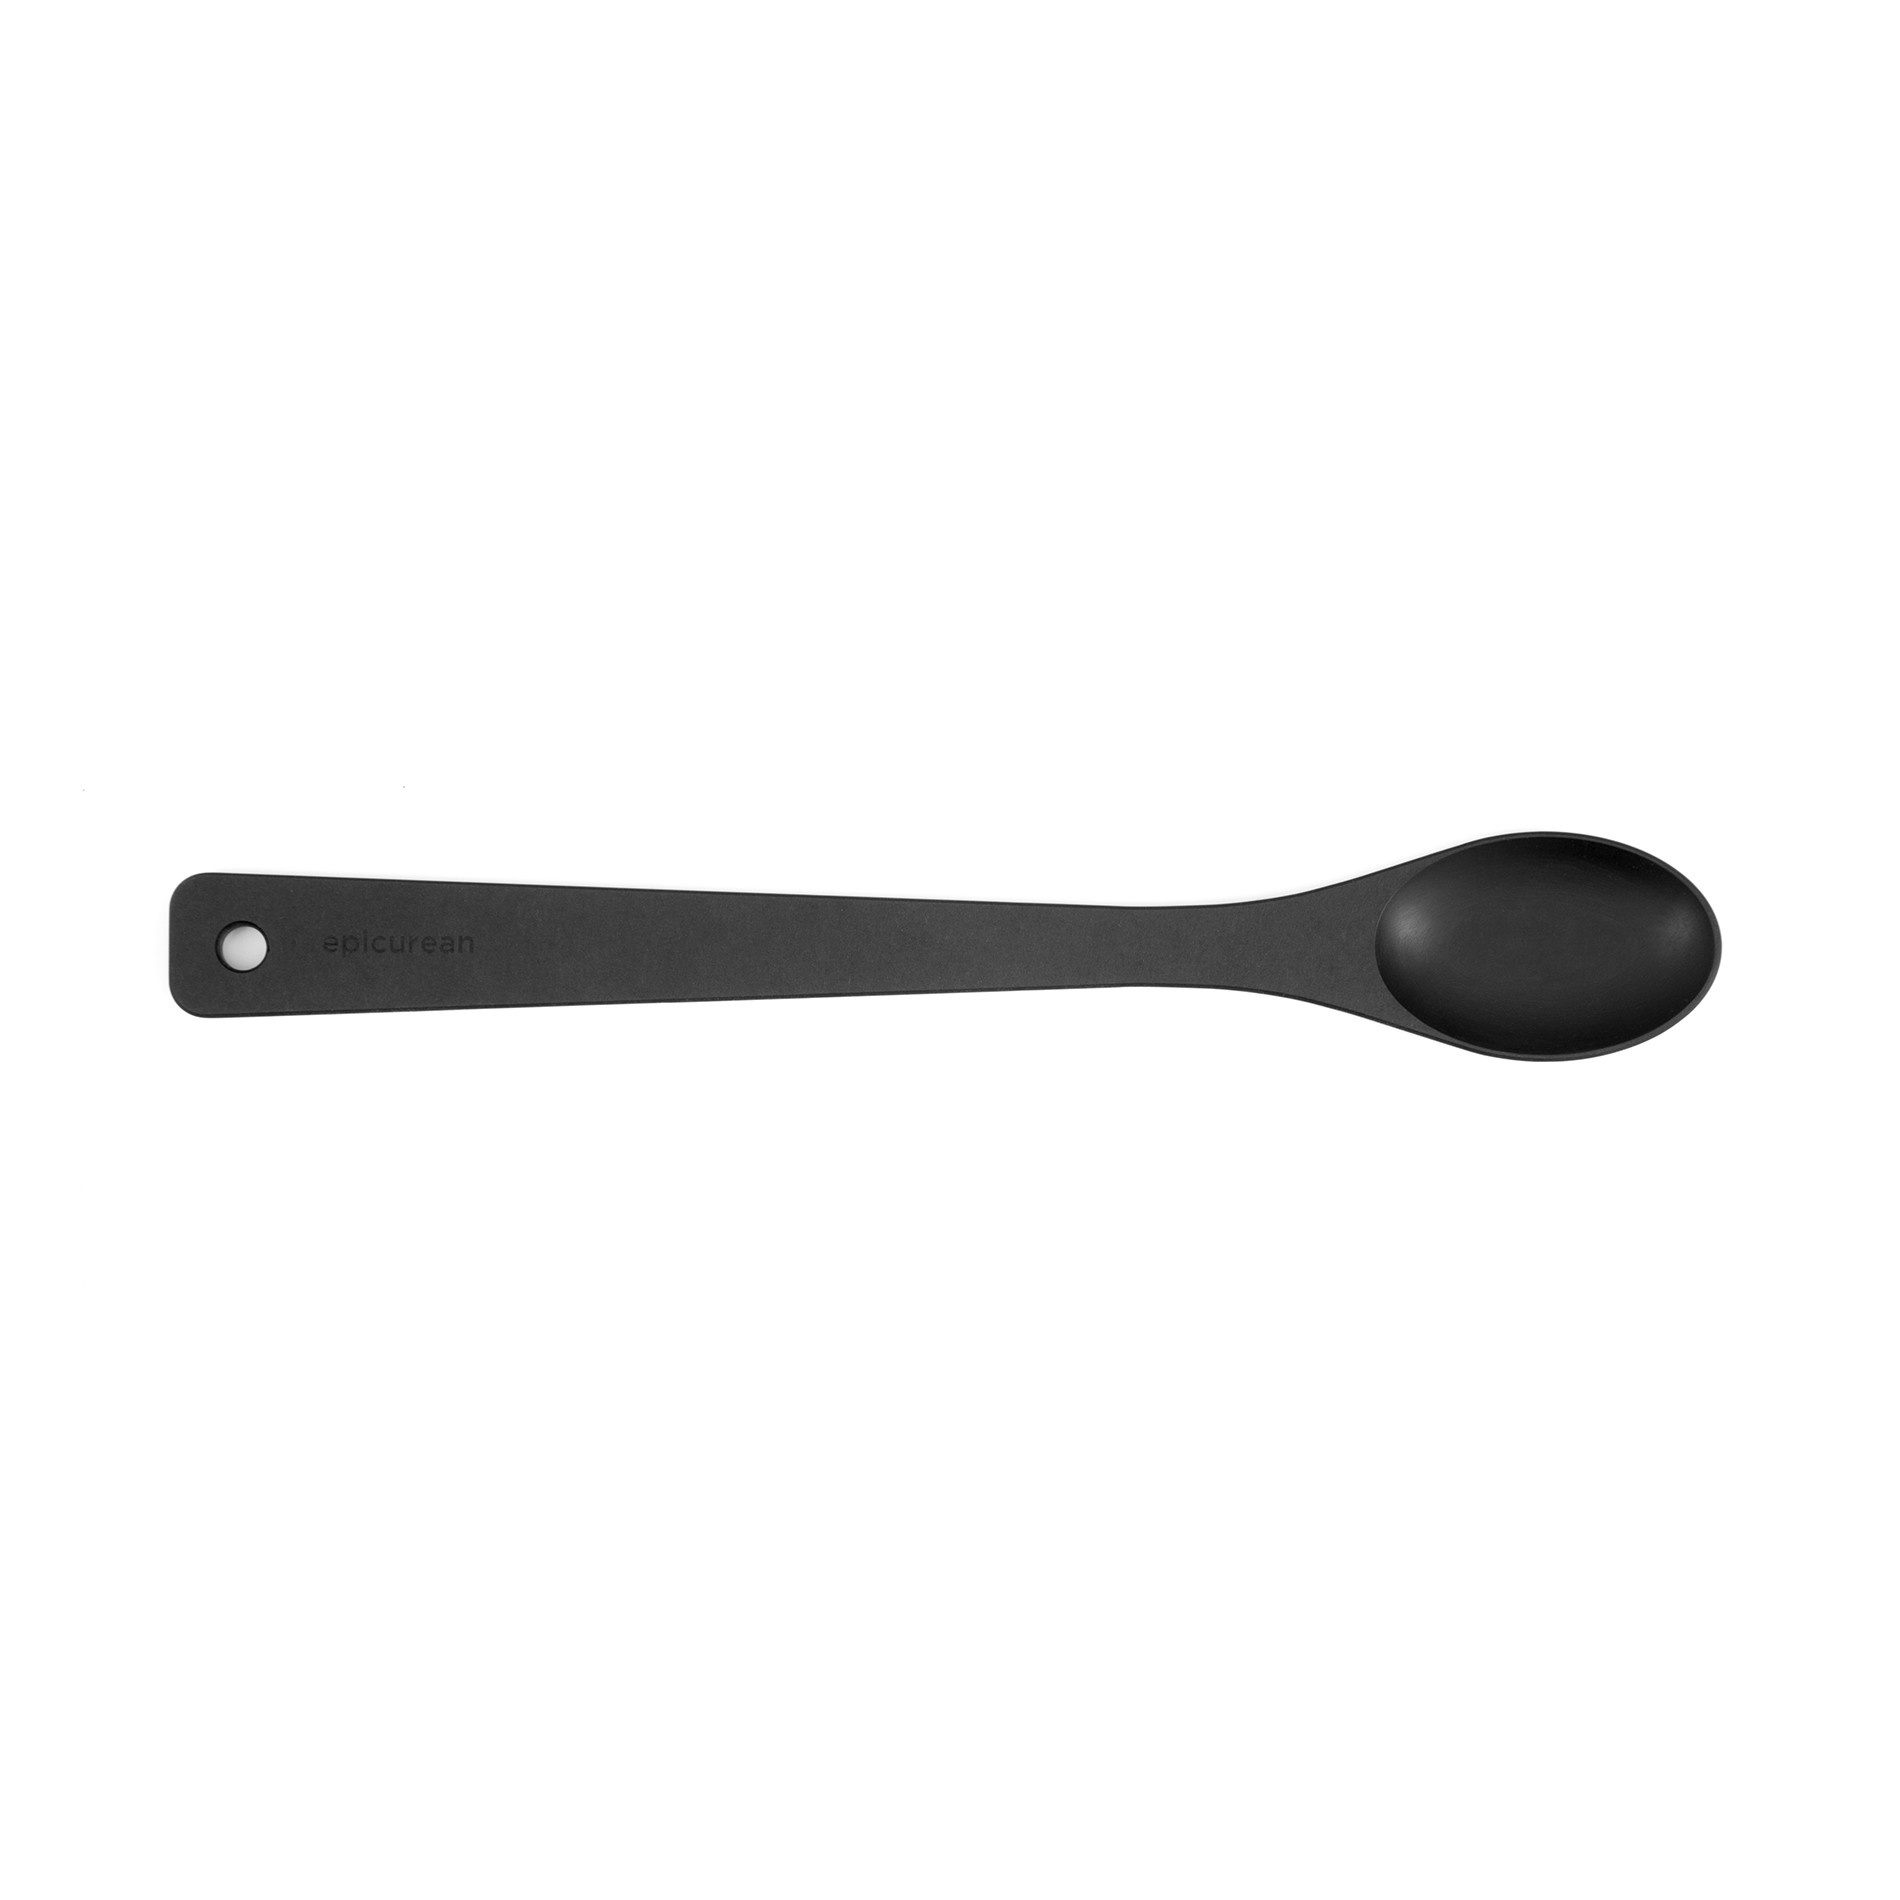 Small Silicone Spoon